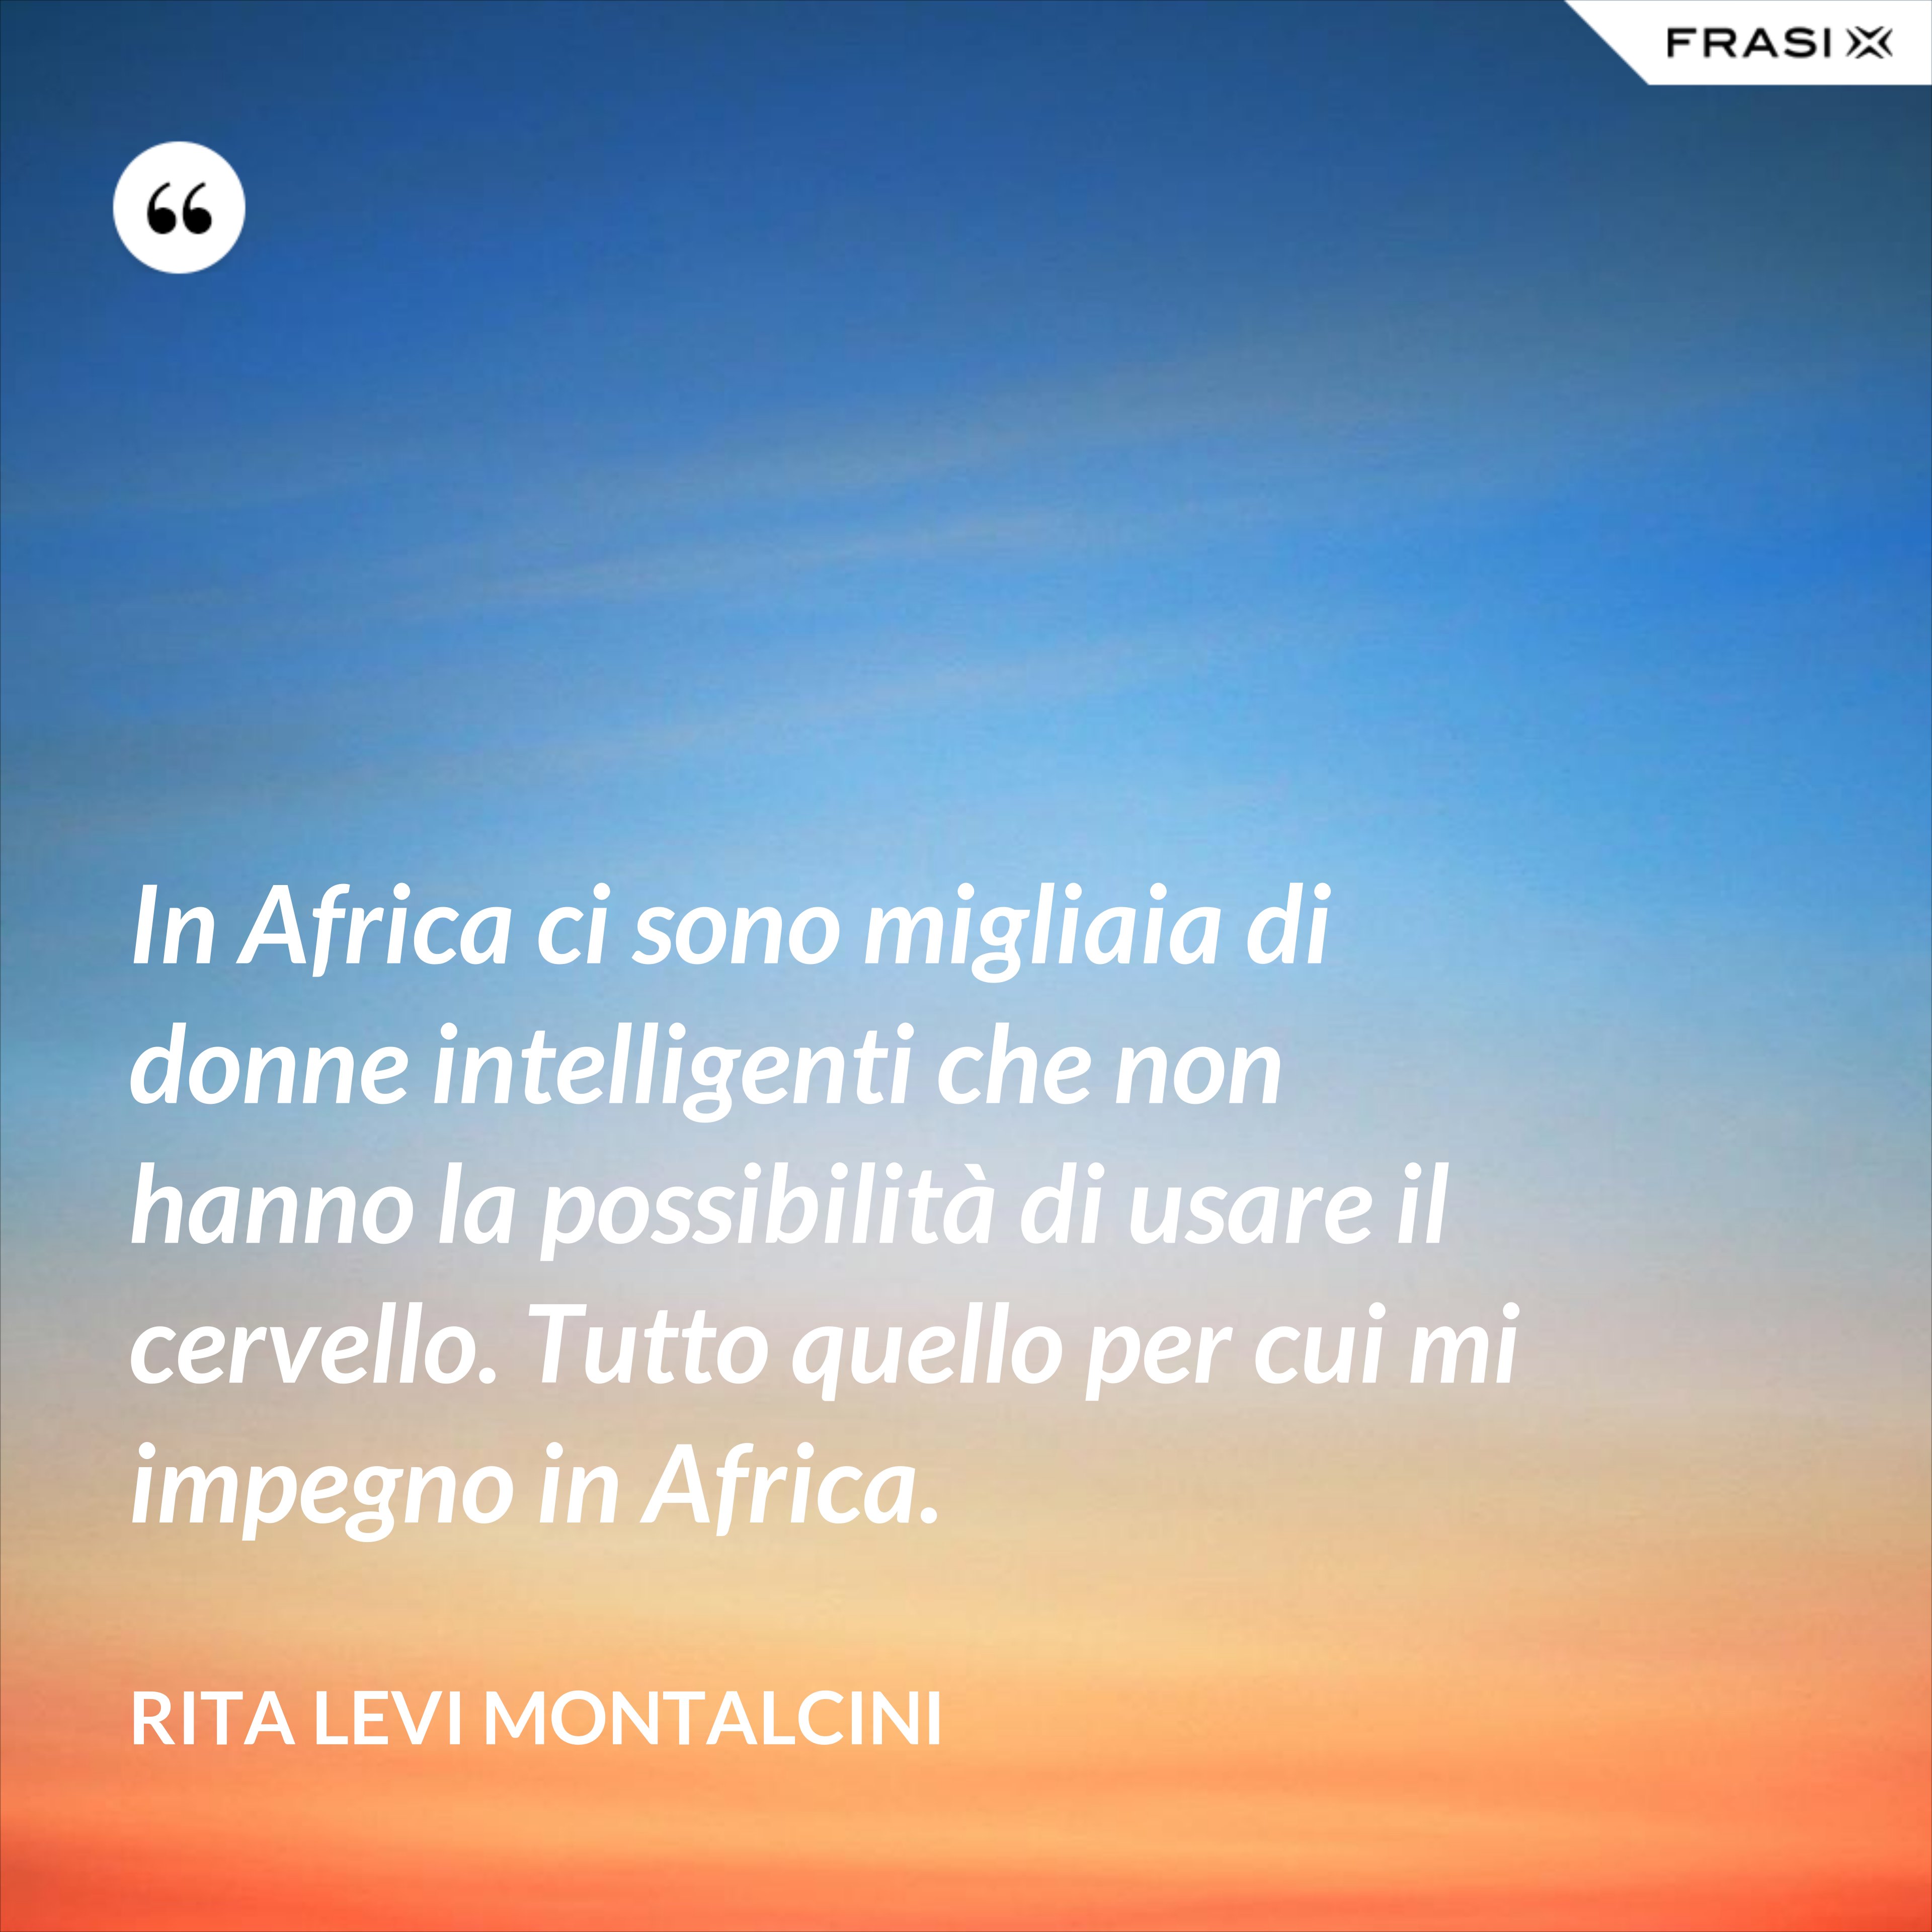 In Africa ci sono migliaia di donne intelligenti che non hanno la possibilità di usare il cervello. Tutto quello per cui mi impegno in Africa. - Rita Levi Montalcini